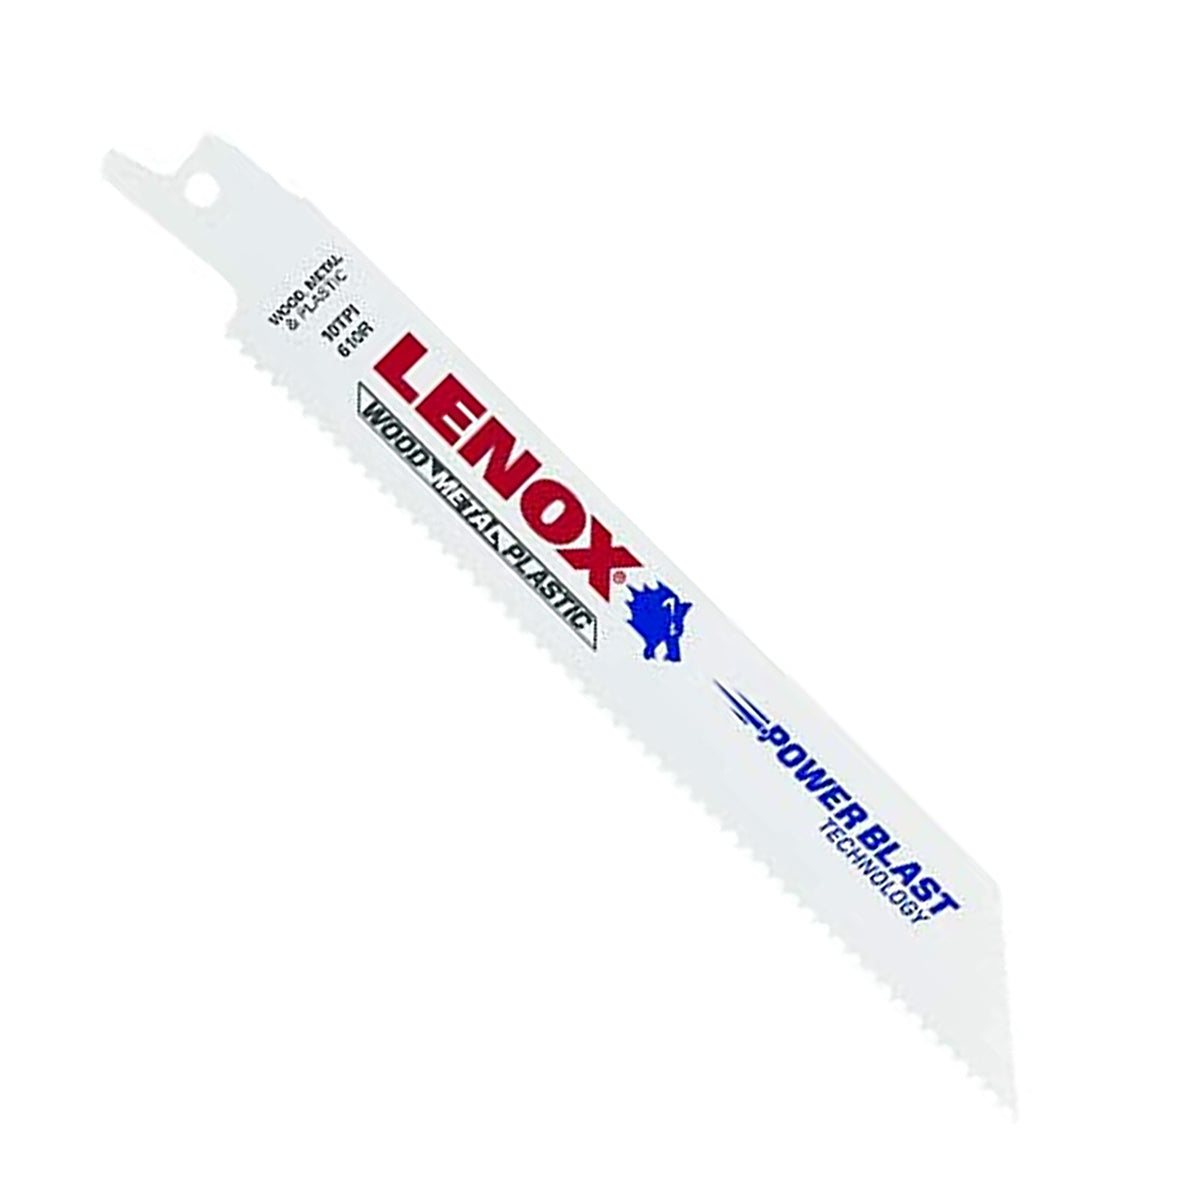 Lenox General Purpose Bi-Metal Reciprocating Saw Blade - 610R - 6", 10 TPI